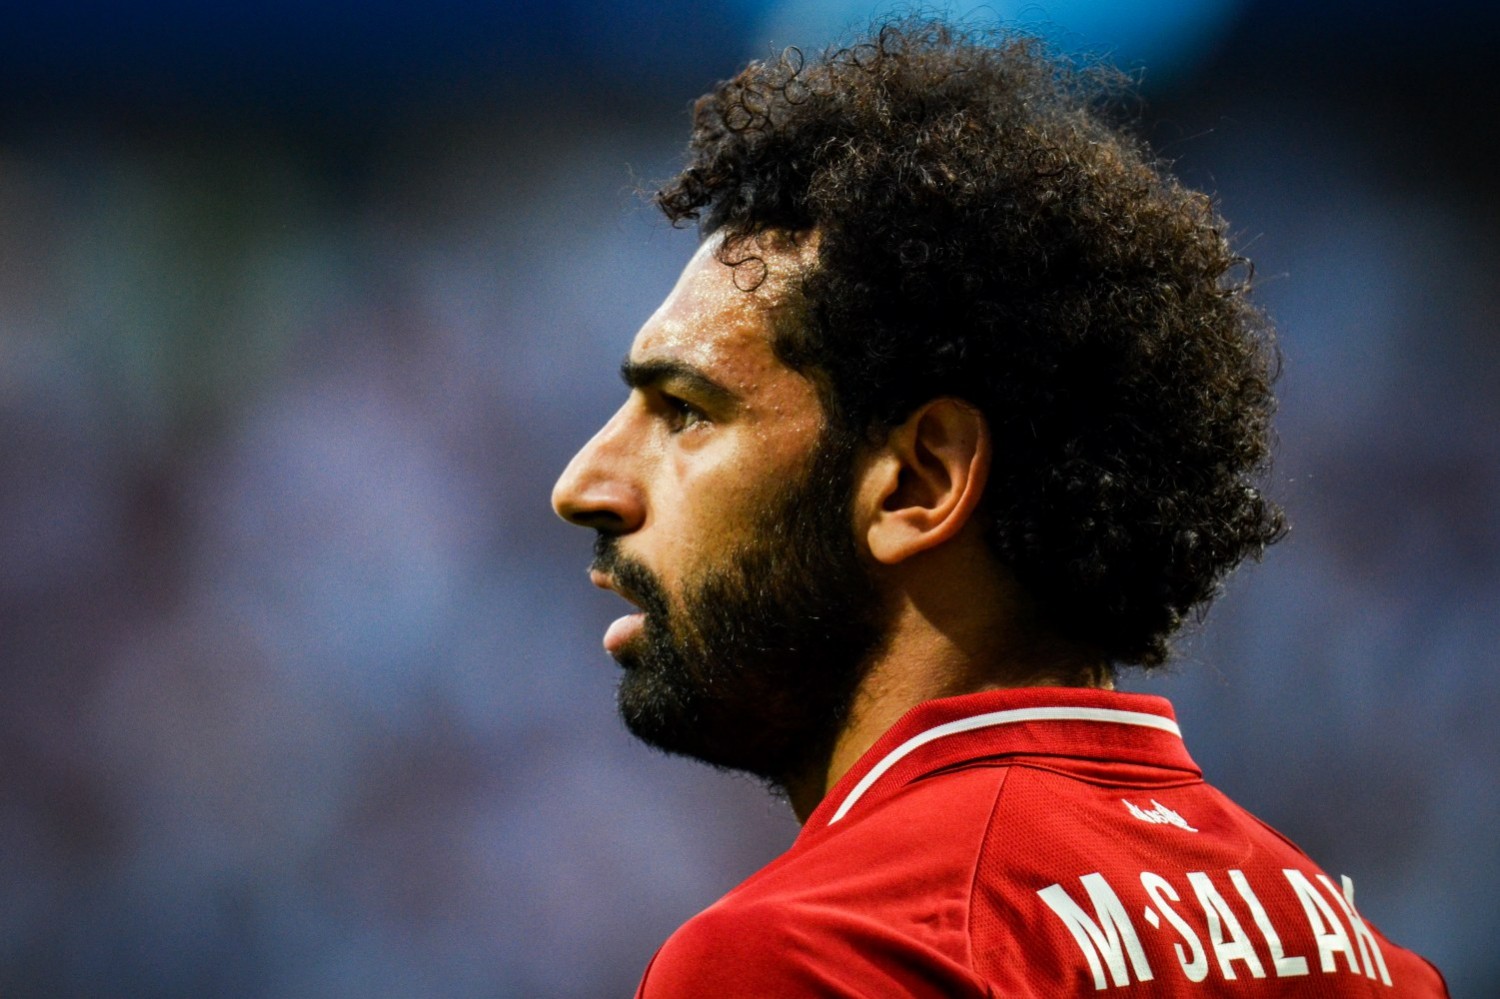 Mohamed Salah o swojej przyszłości: Liverpool wie, czego chcę. Nie proszę o szalone rzeczy